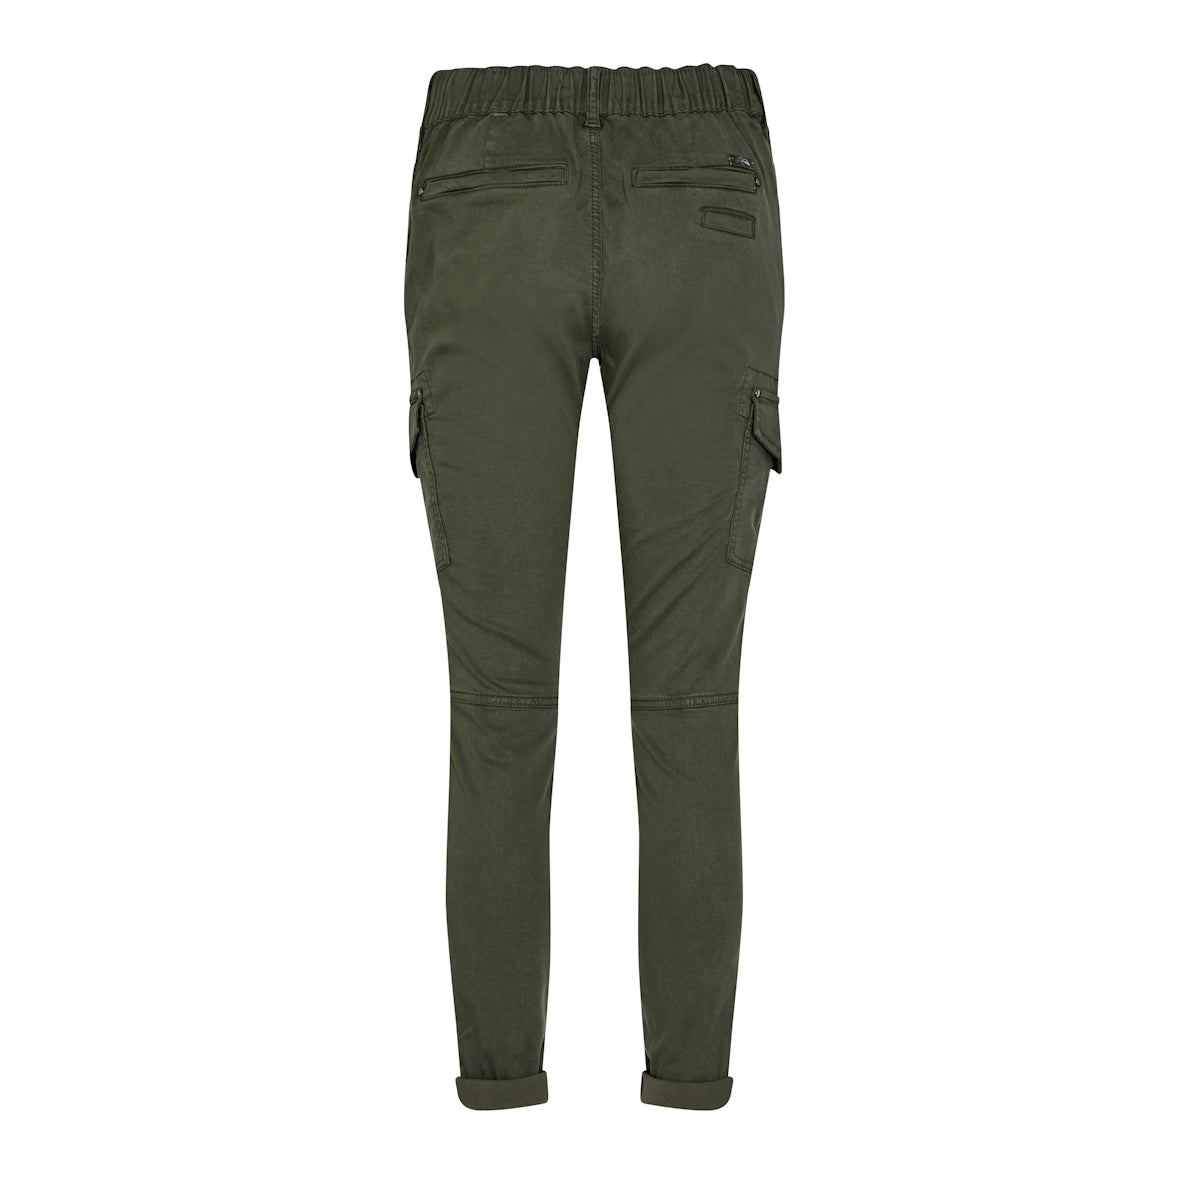 Soft Surroundings, Pants & Jumpsuits, Soft Surroundings Medina Pants  Mossy Green Xl Style 2cy73